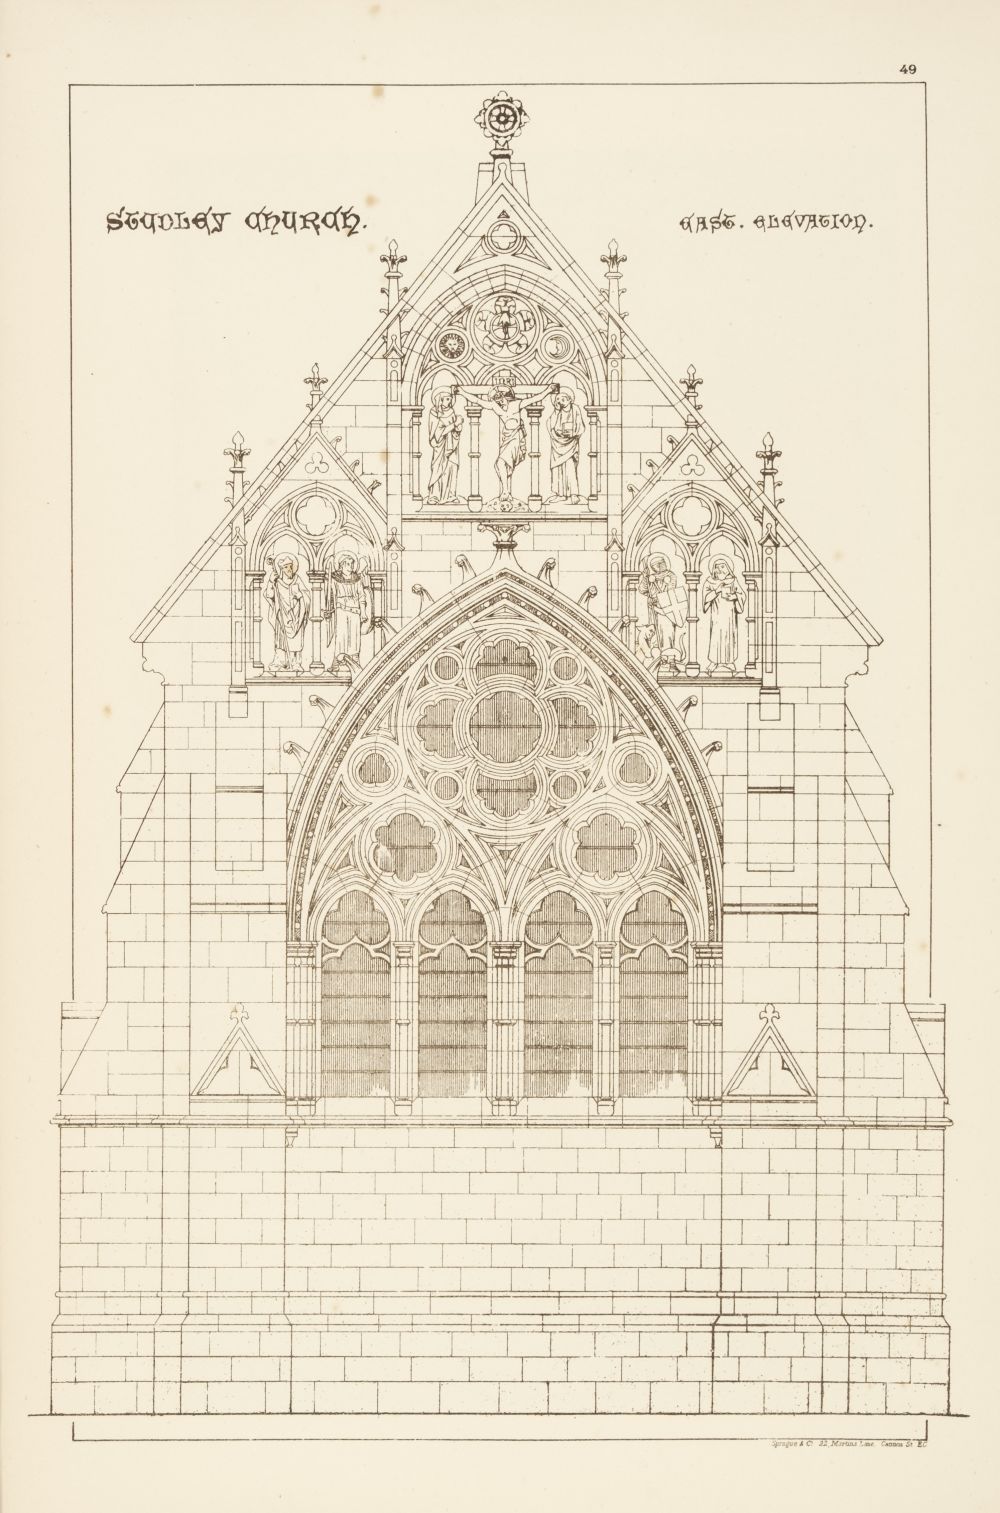 Burges (William). The Architectural Designs of William Burges..., 1883